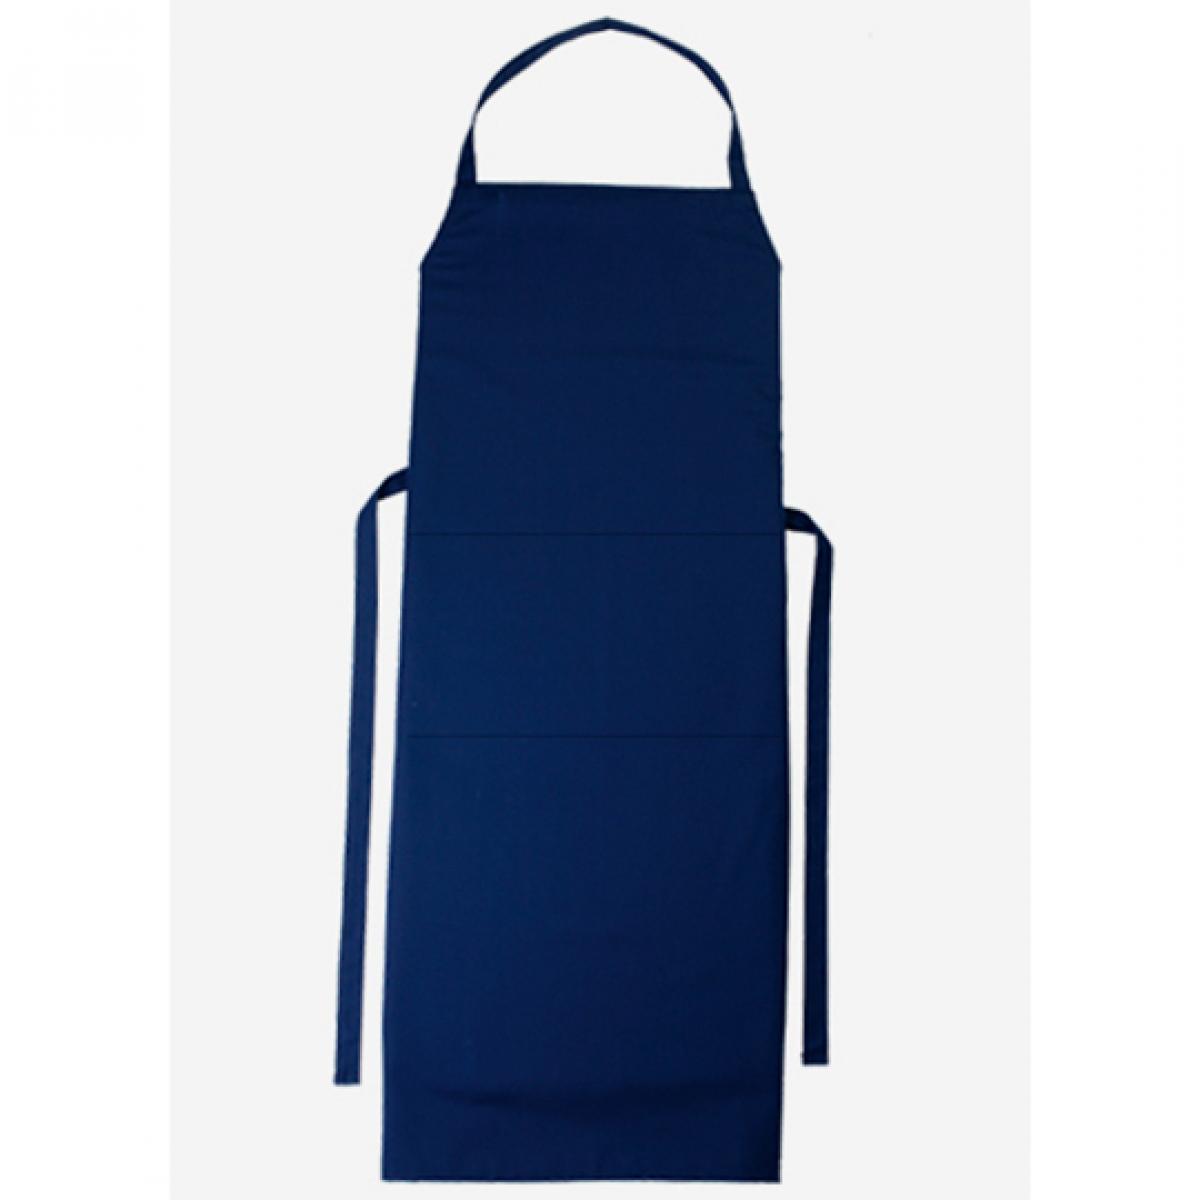 Hersteller: CG Workwear Herstellernummer: 01146-01 Artikelbezeichnung: Latzschürze Verona Classic Bag 90 x 75 cm Farbe: Navy